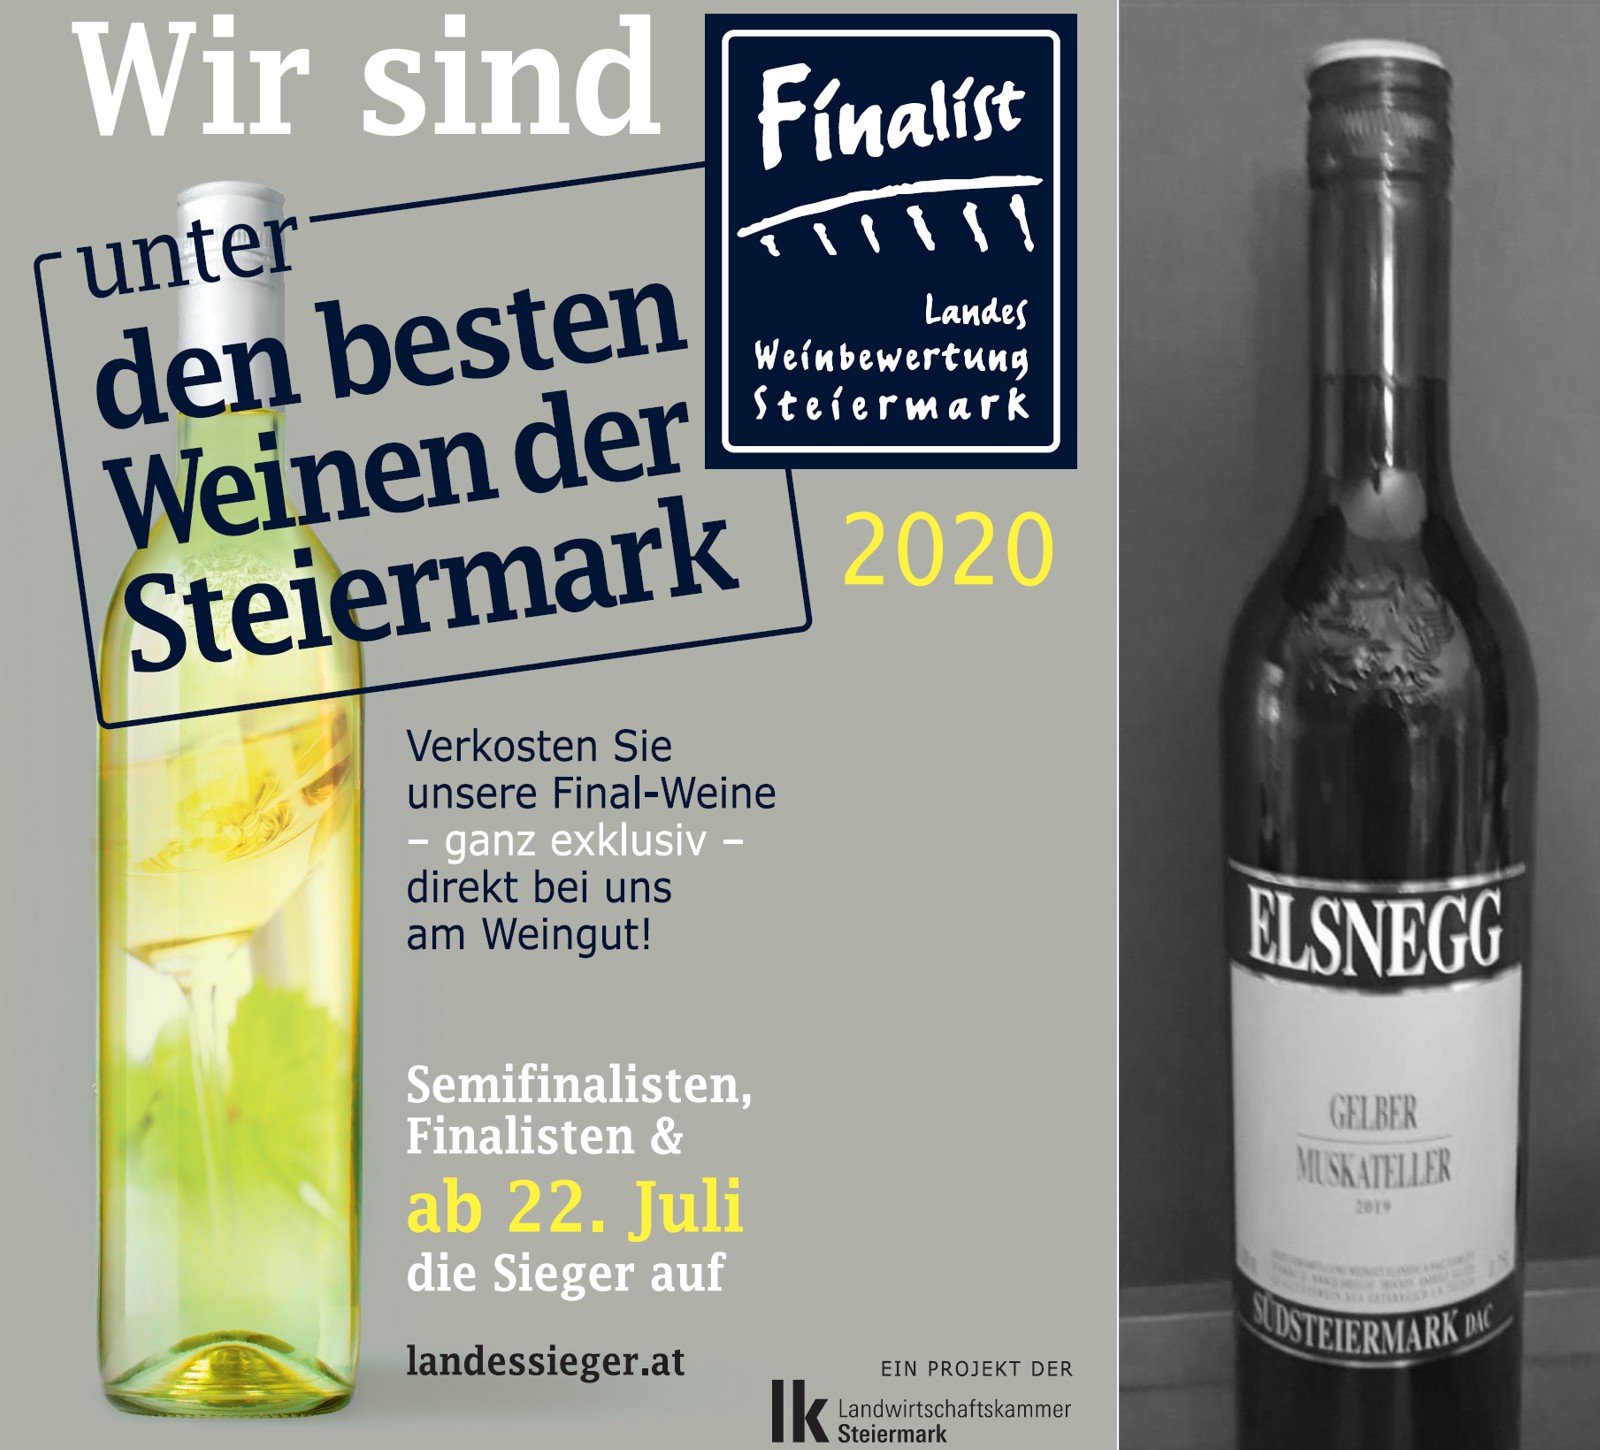 Landesweinbewertung 2020 - Finalist